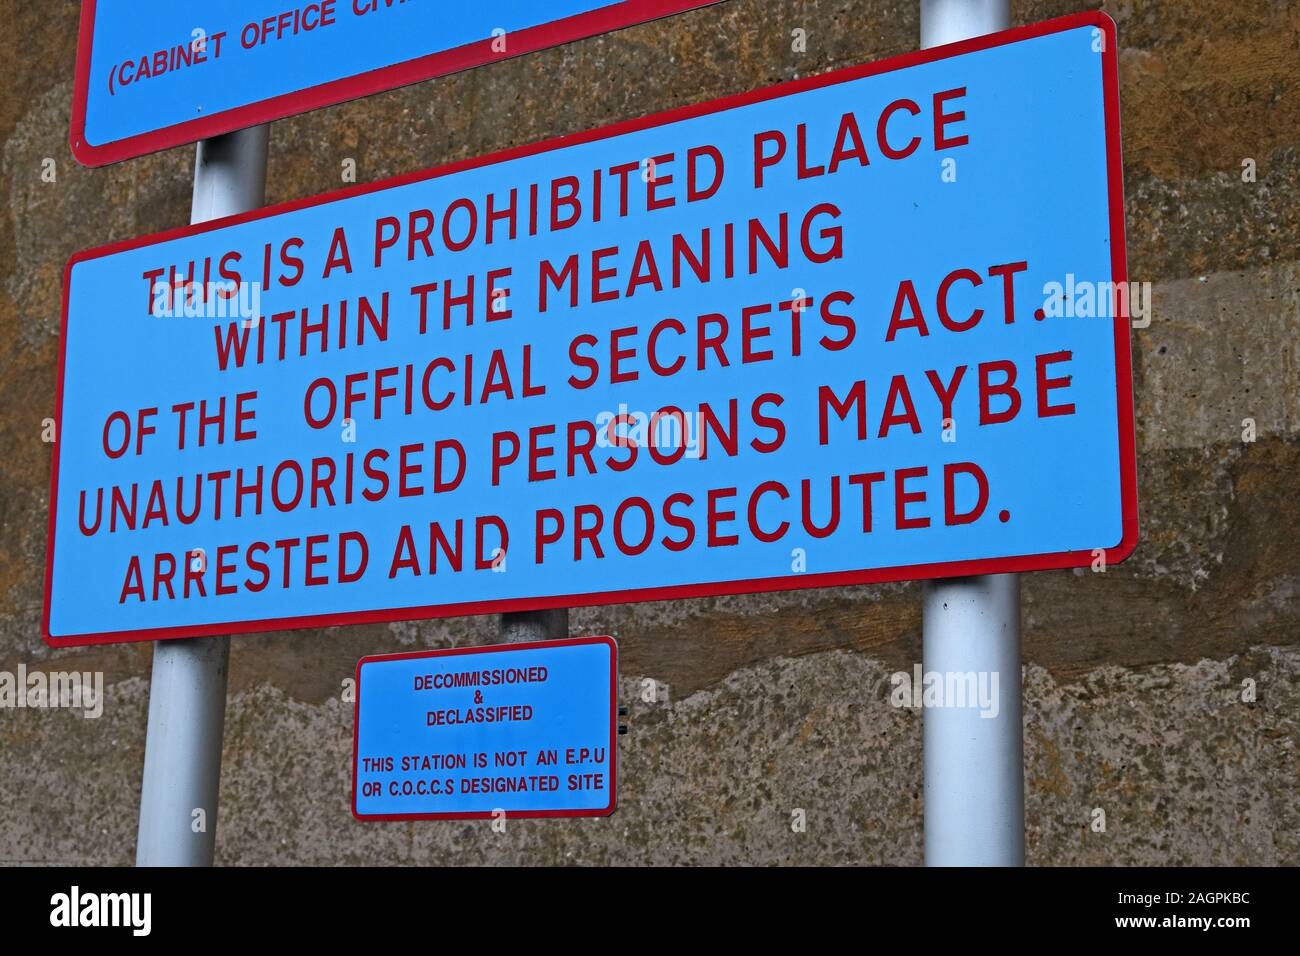 Ministère de la Défense britannique, propriété interdite place, loi sur les secrets officiels, MOD sign Banque D'Images